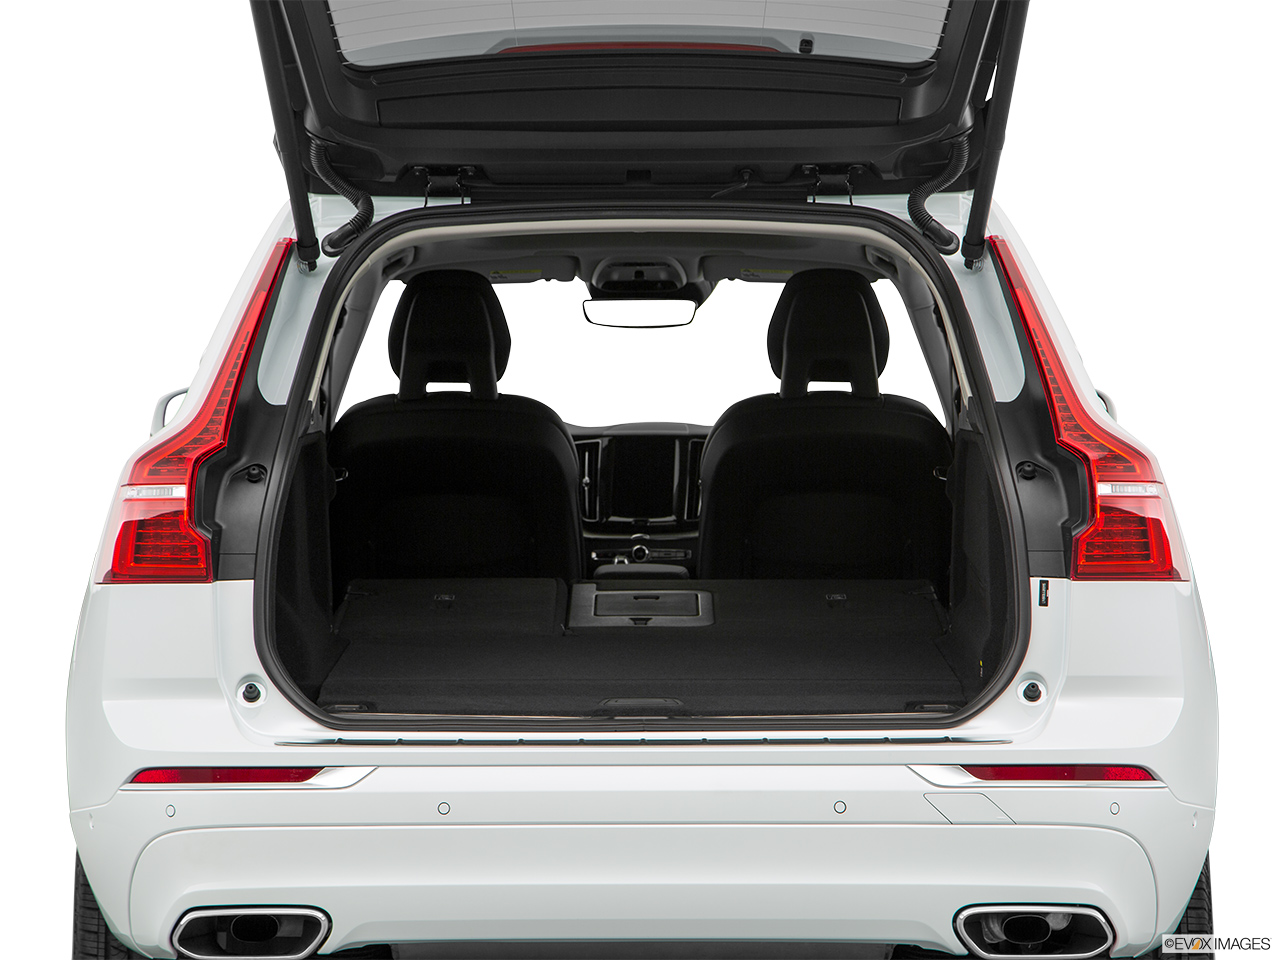 2019 Volvo XC60 T8 Inscription eAWD Plug-in Hybrid Hatchback & SUV rear angle. 